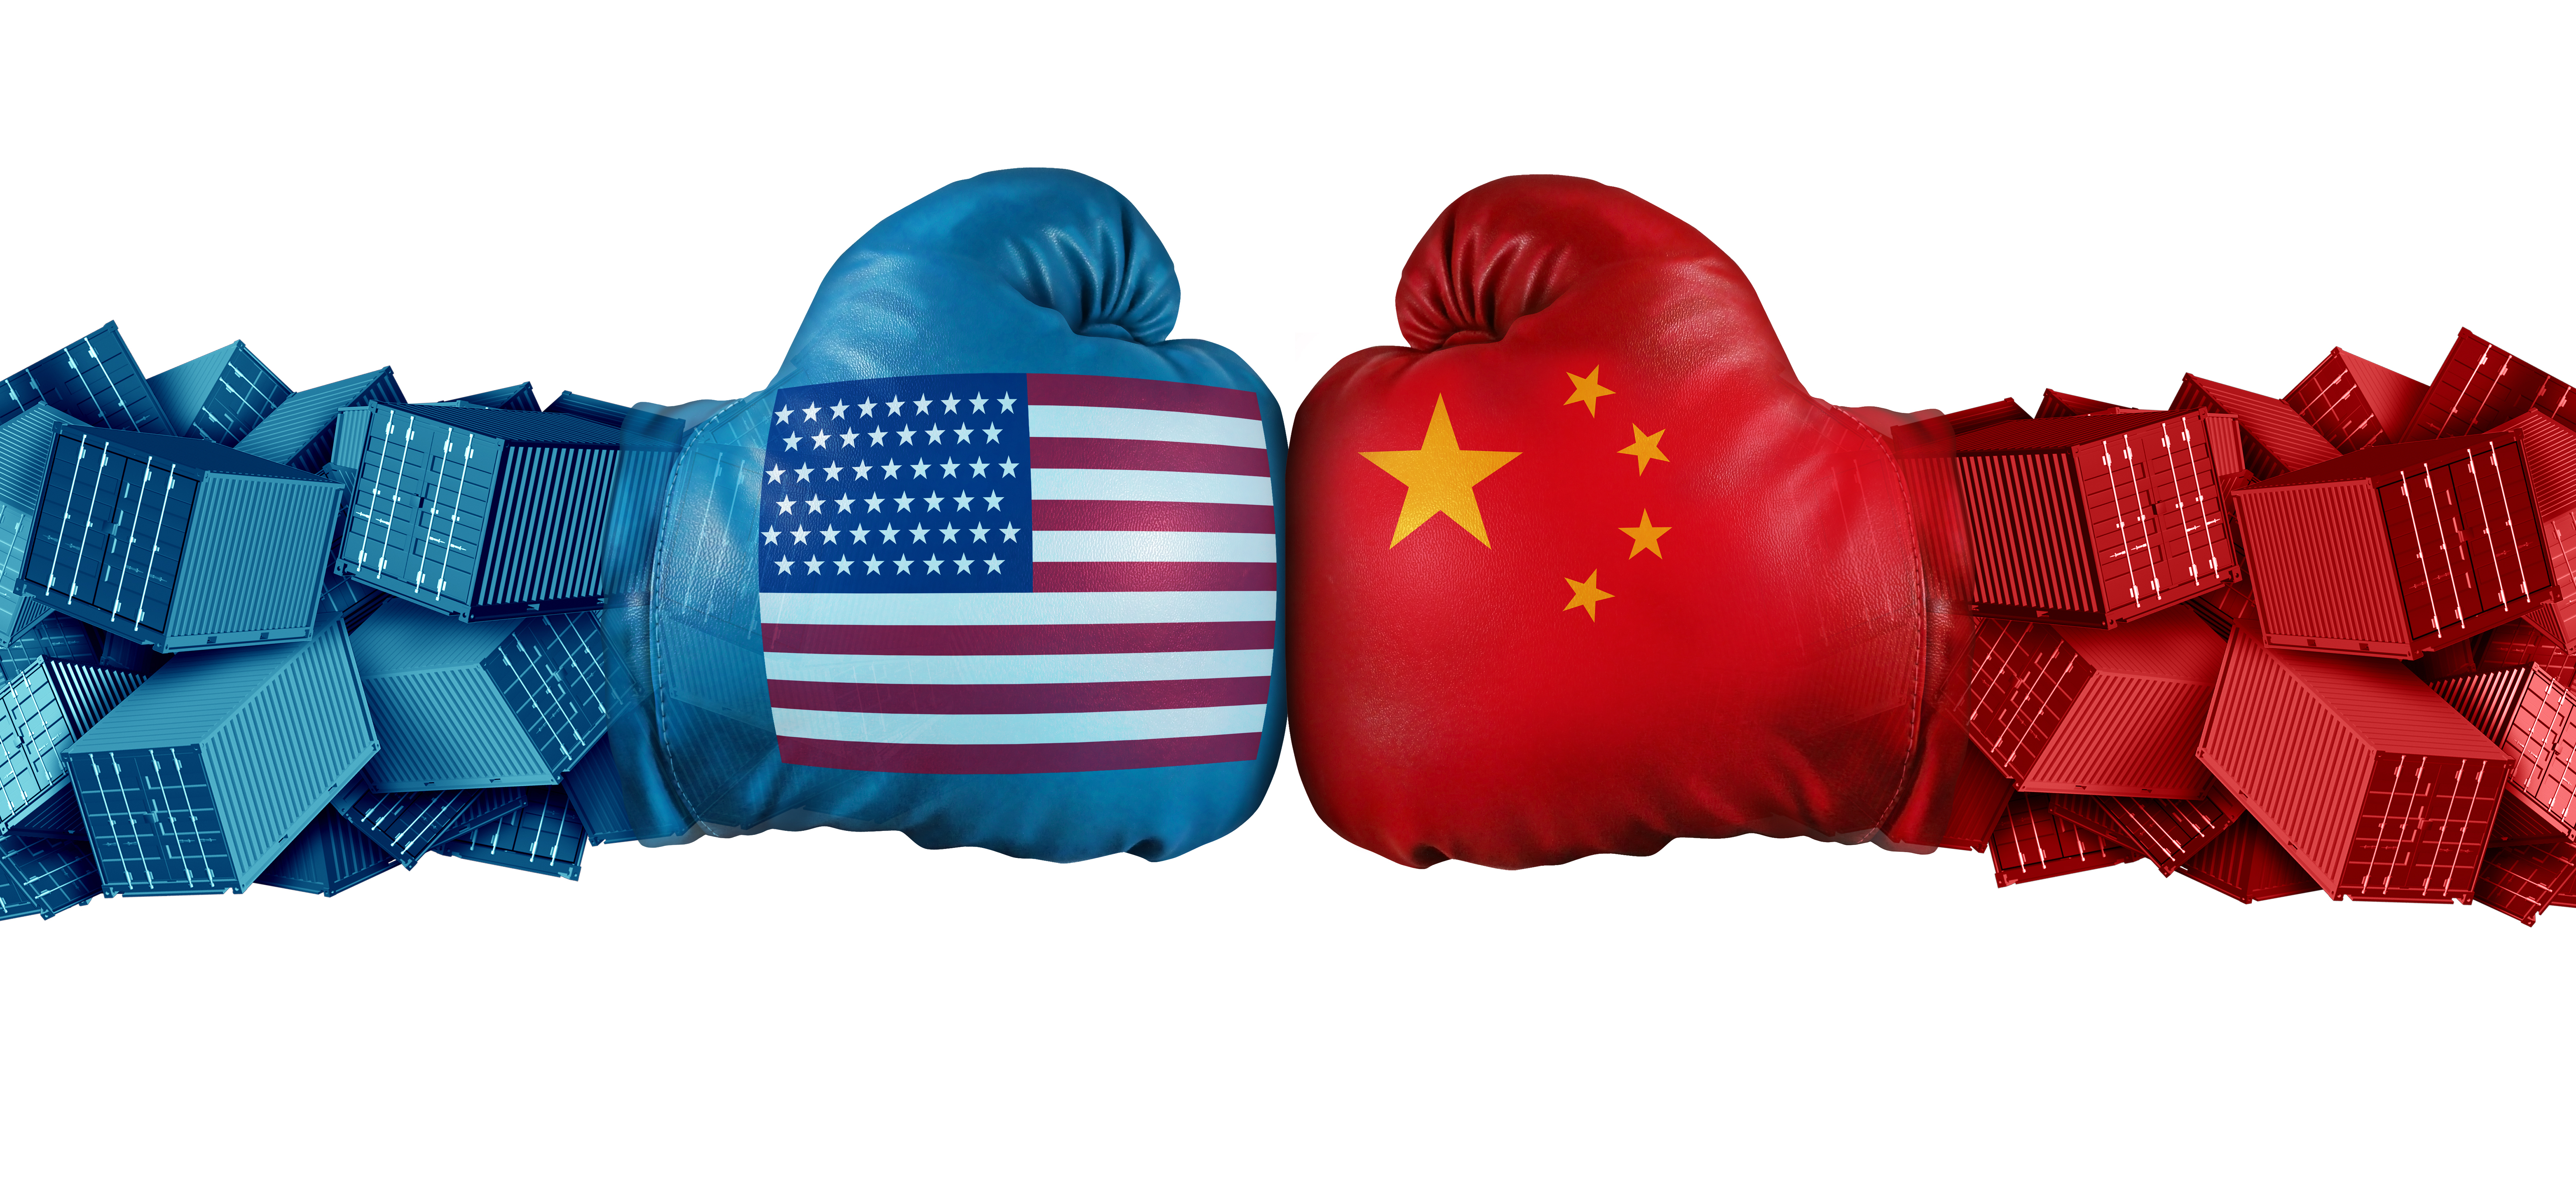 สหรัฐฯ จะคงอัตราภาษีนำเข้าสินค้าจีนที่จัดเก็บเพิ่มภายใต้สงครามการค้า